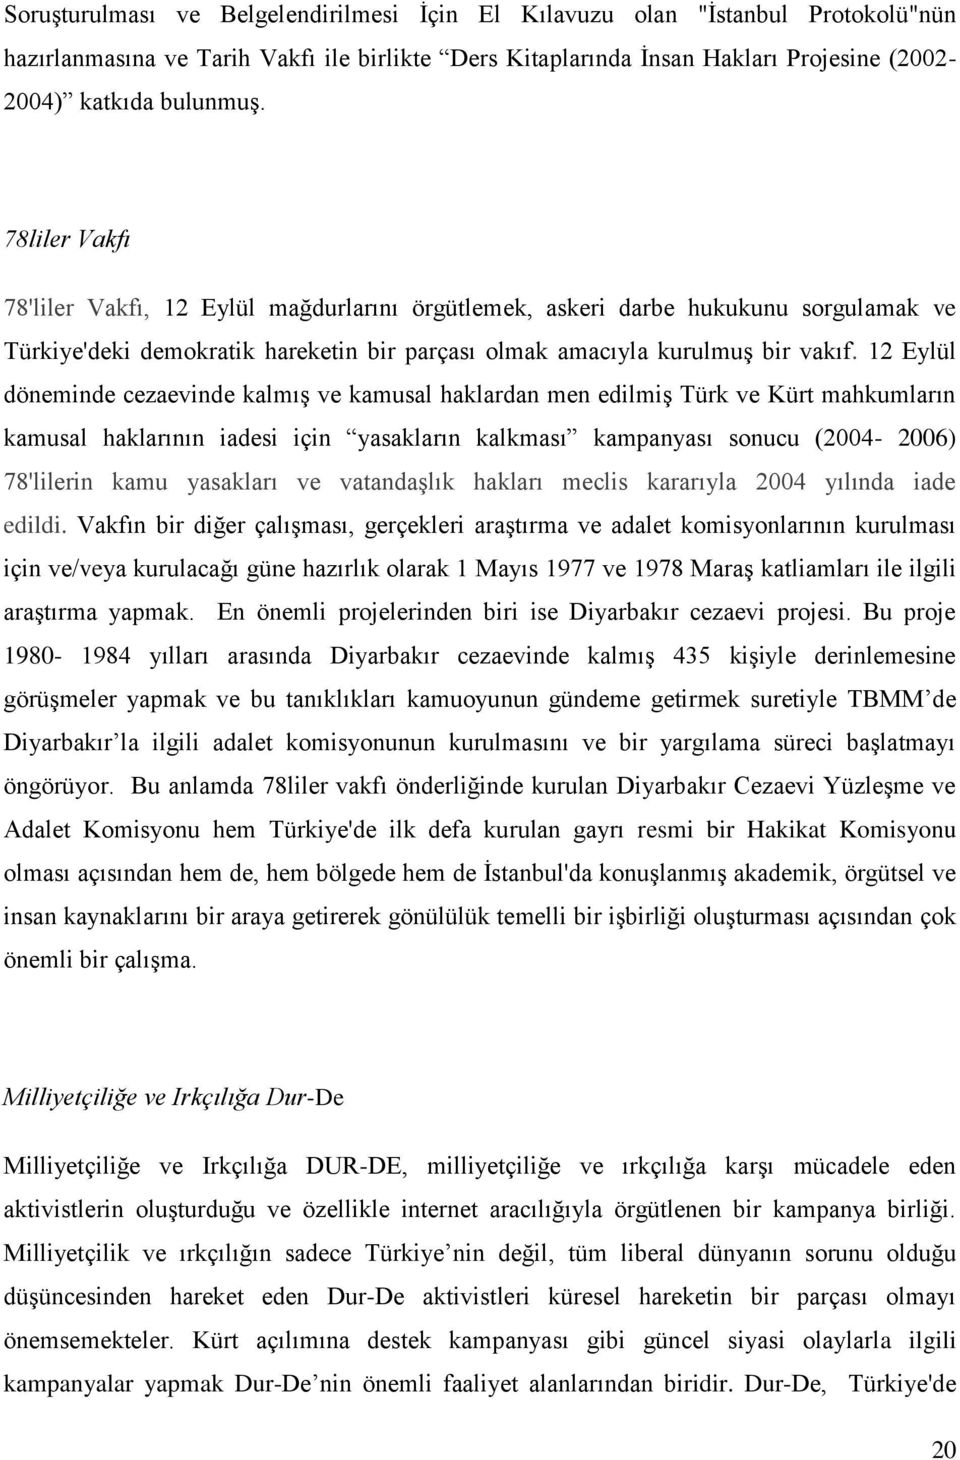 12 Eylül döneminde cezaevinde kalmış ve kamusal haklardan men edilmiş Türk ve Kürt mahkumların kamusal haklarının iadesi için yasakların kalkması kampanyası sonucu (2004-2006) 78'lilerin kamu